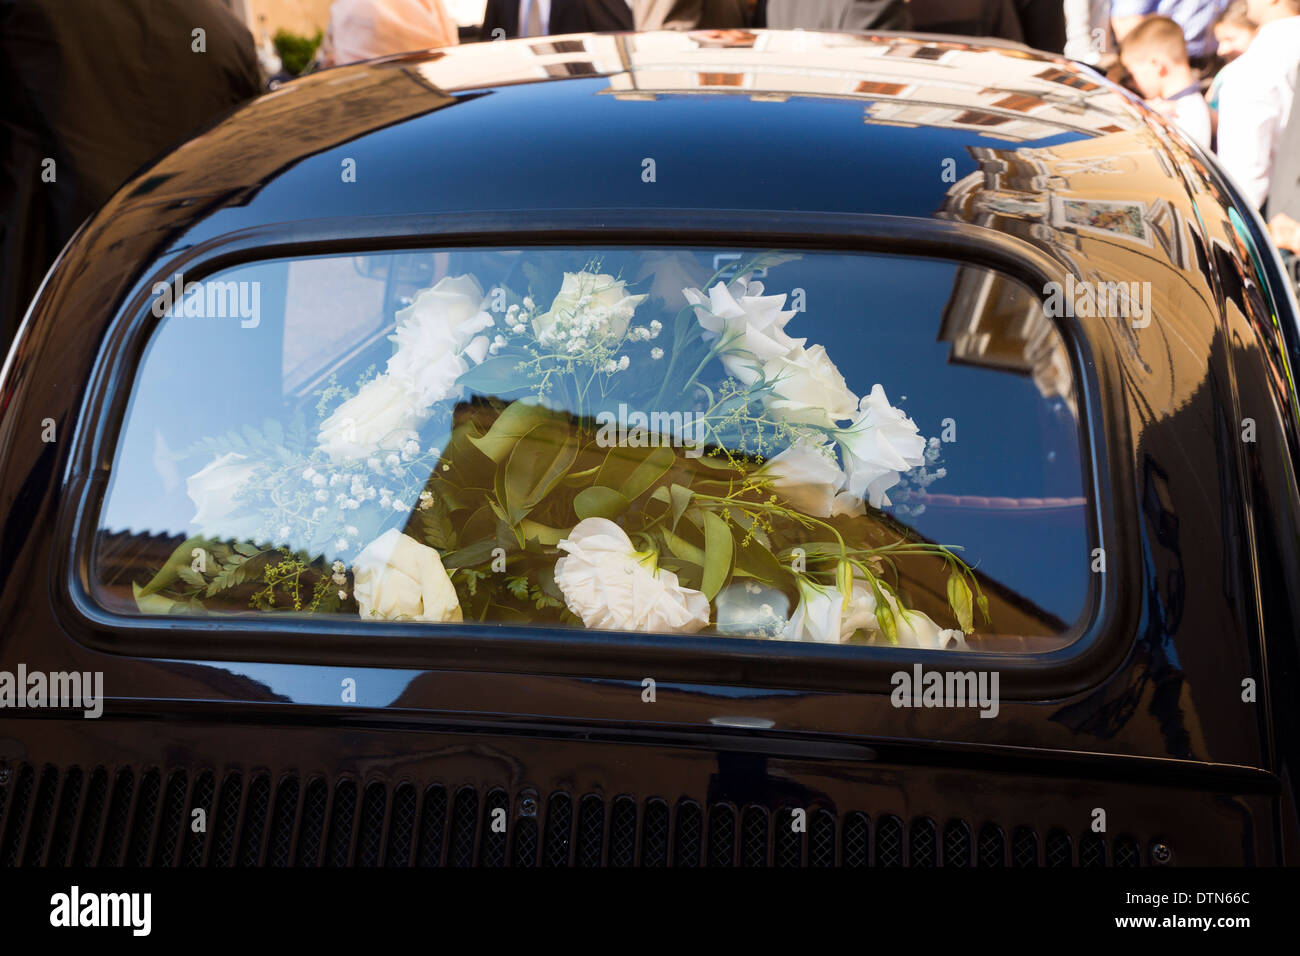 Neue Kreative Hochzeit Auto Decor Blume Tür Griffe Rückspiegel